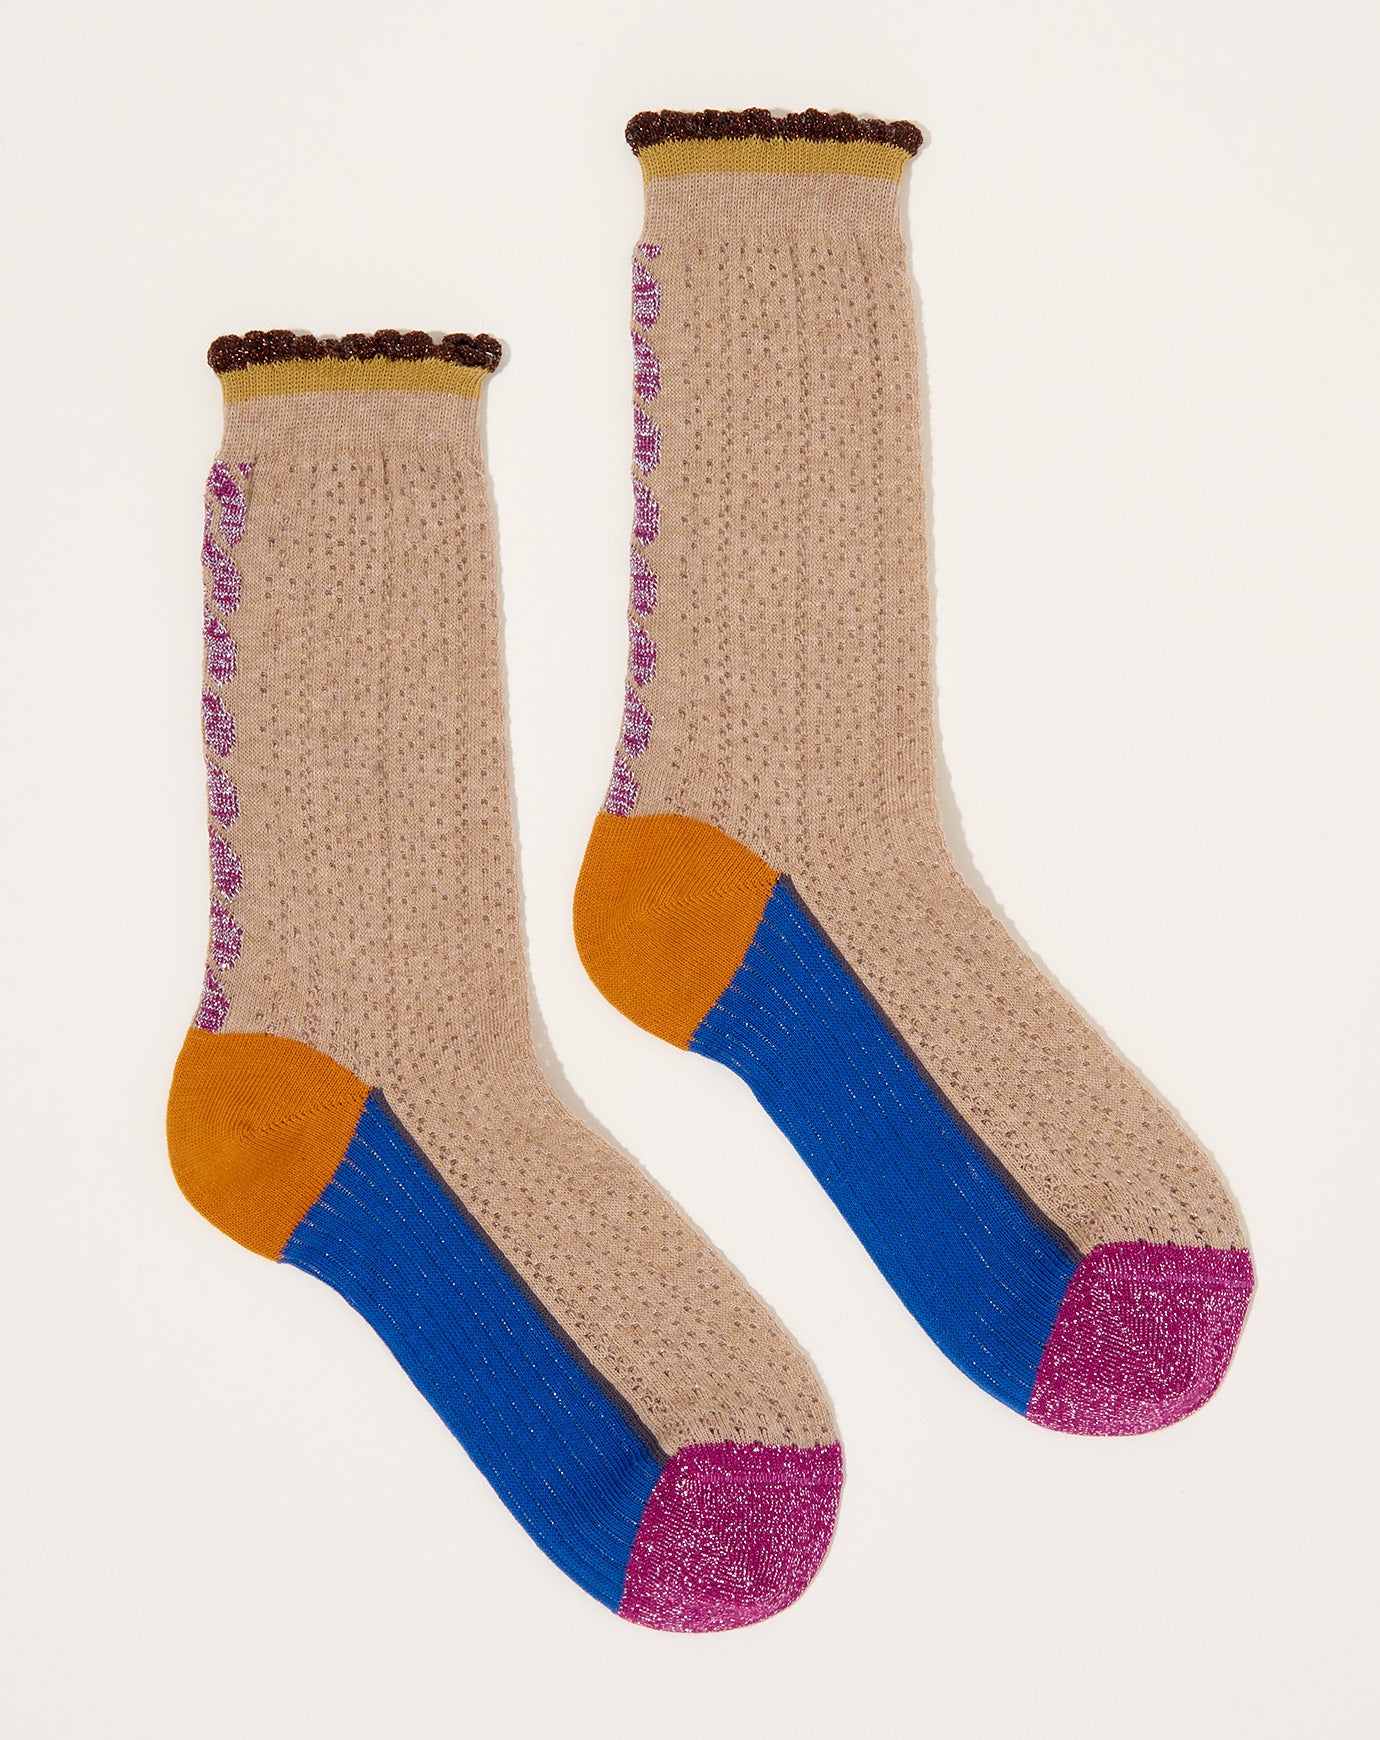 Exquisite J Cotton Simple Braid Socks in Camel